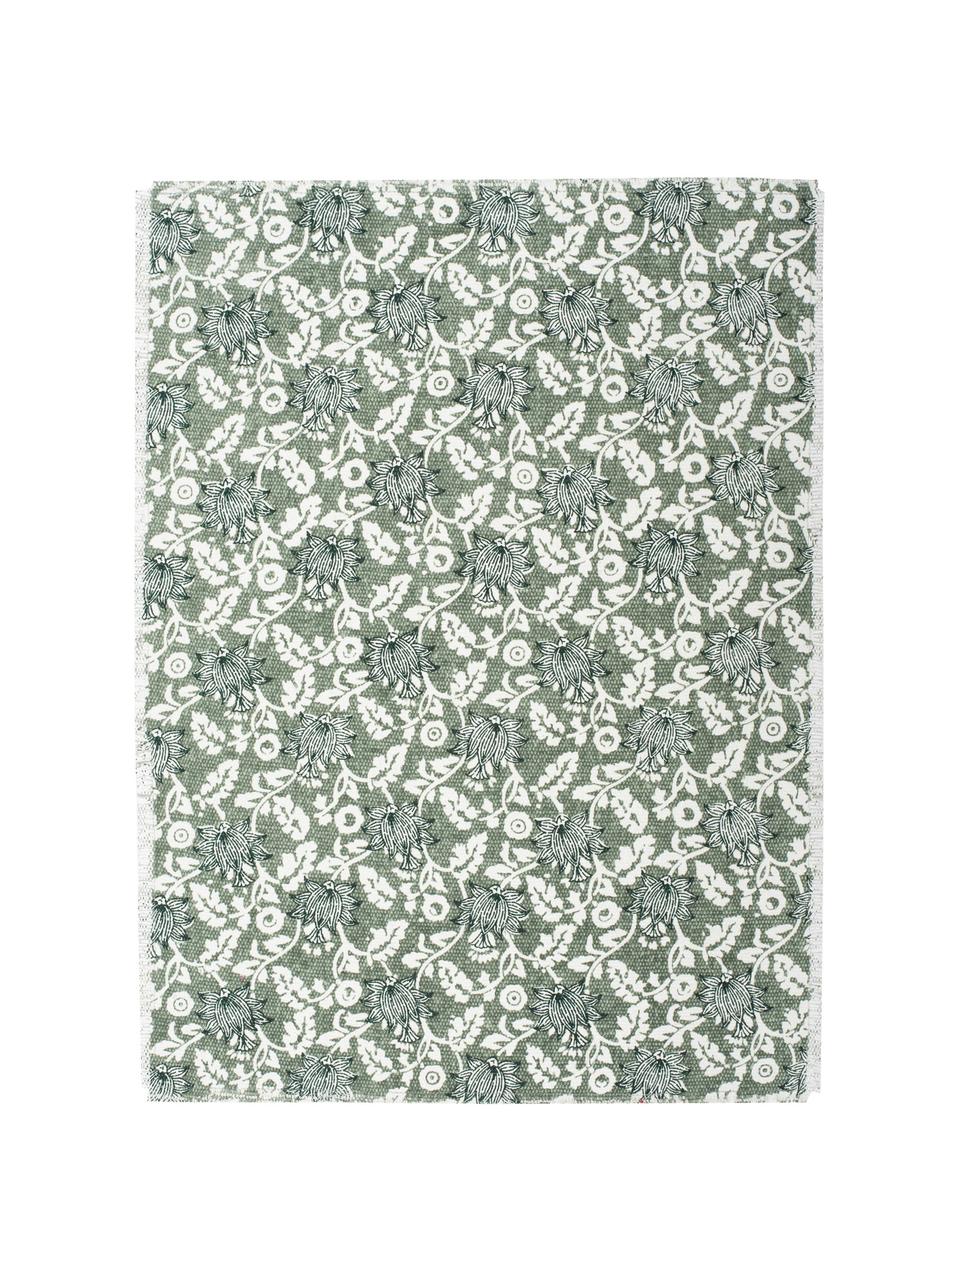 Baumwoll-Tischsets Gaya mit Blumenprint, 2 Stück, Baumwolle, Grüntöne, 35 x 38 cm